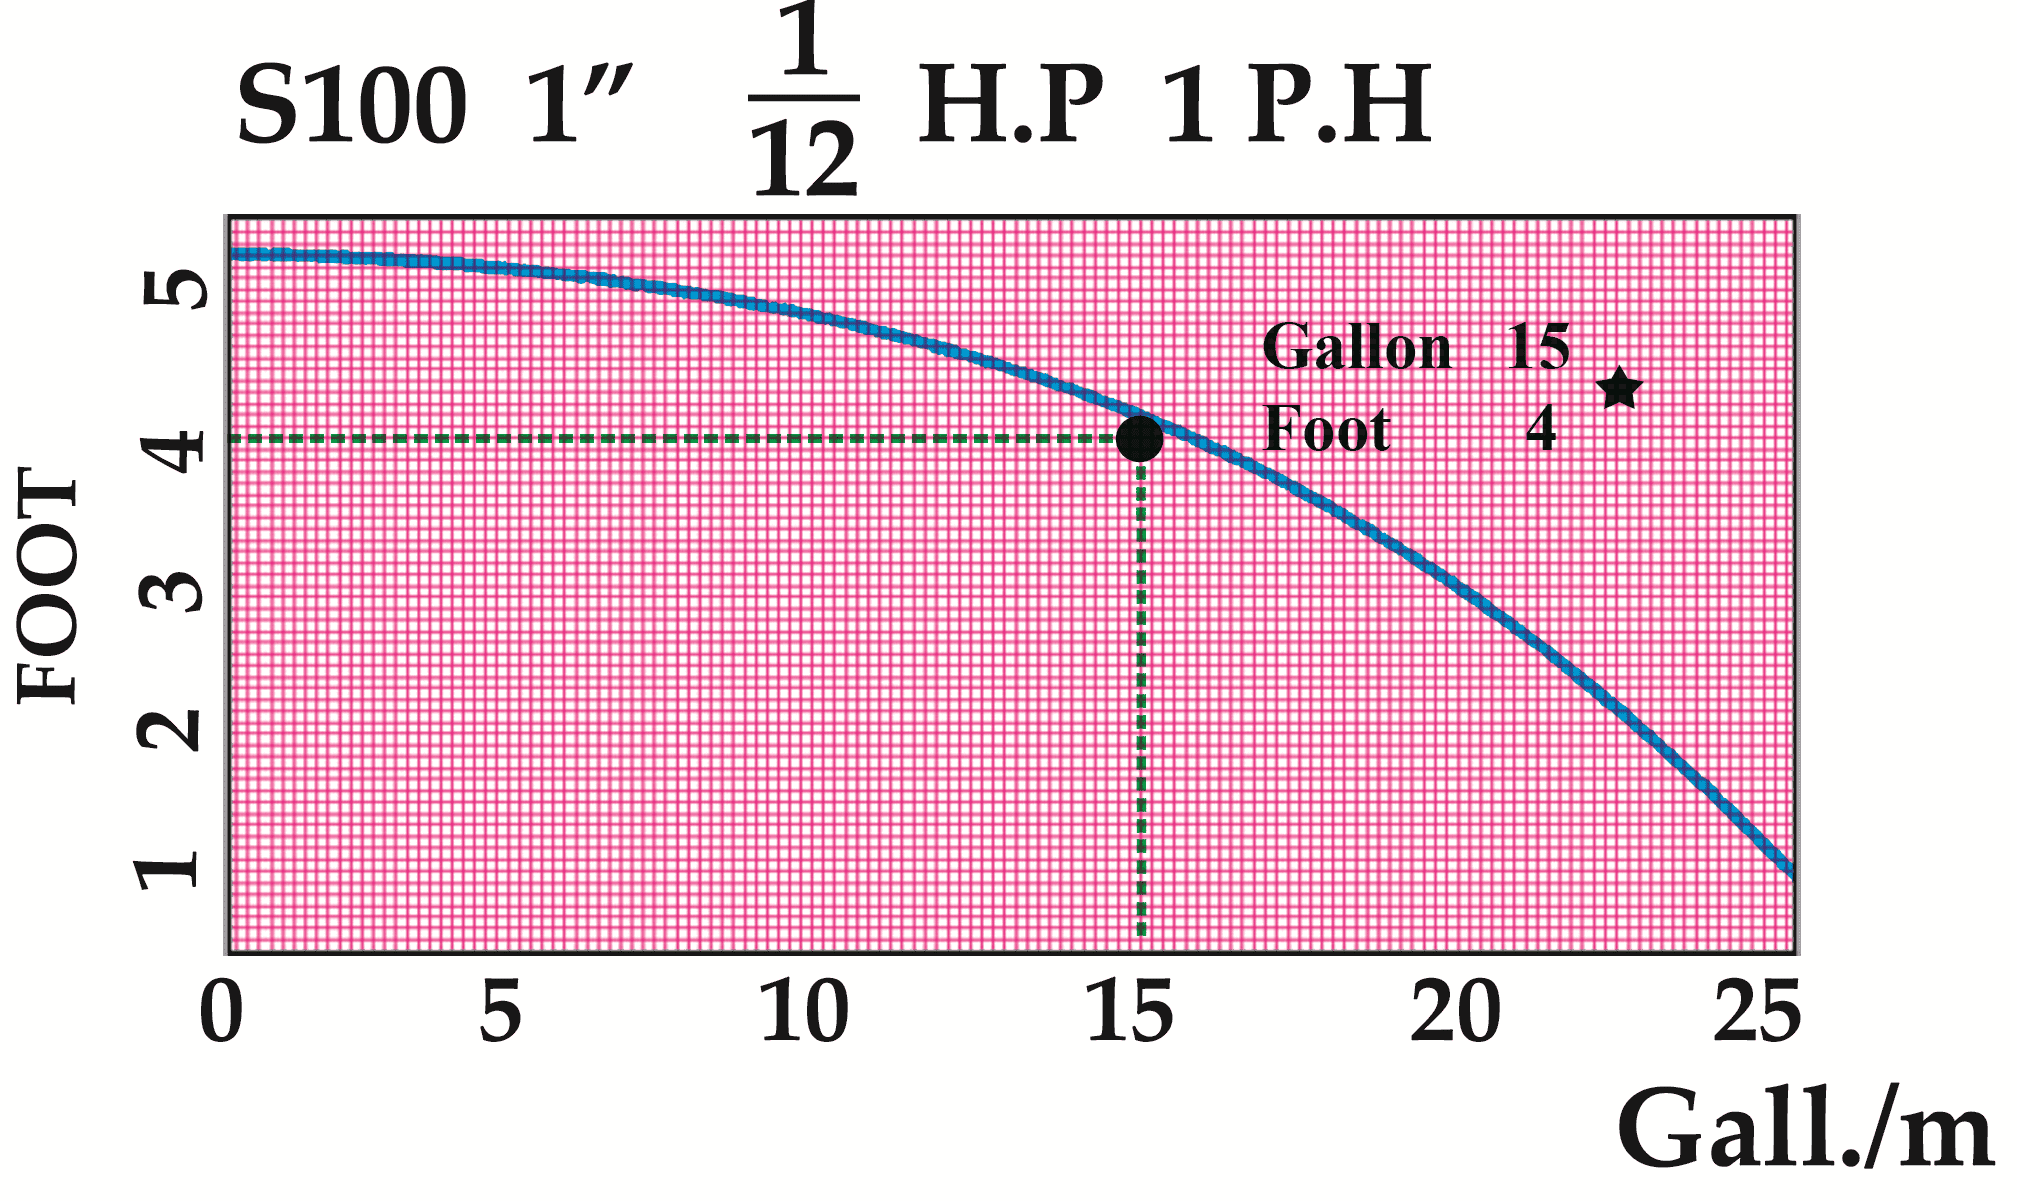 نمودار پمپ تهران (بلند کاست) S(25)100 1